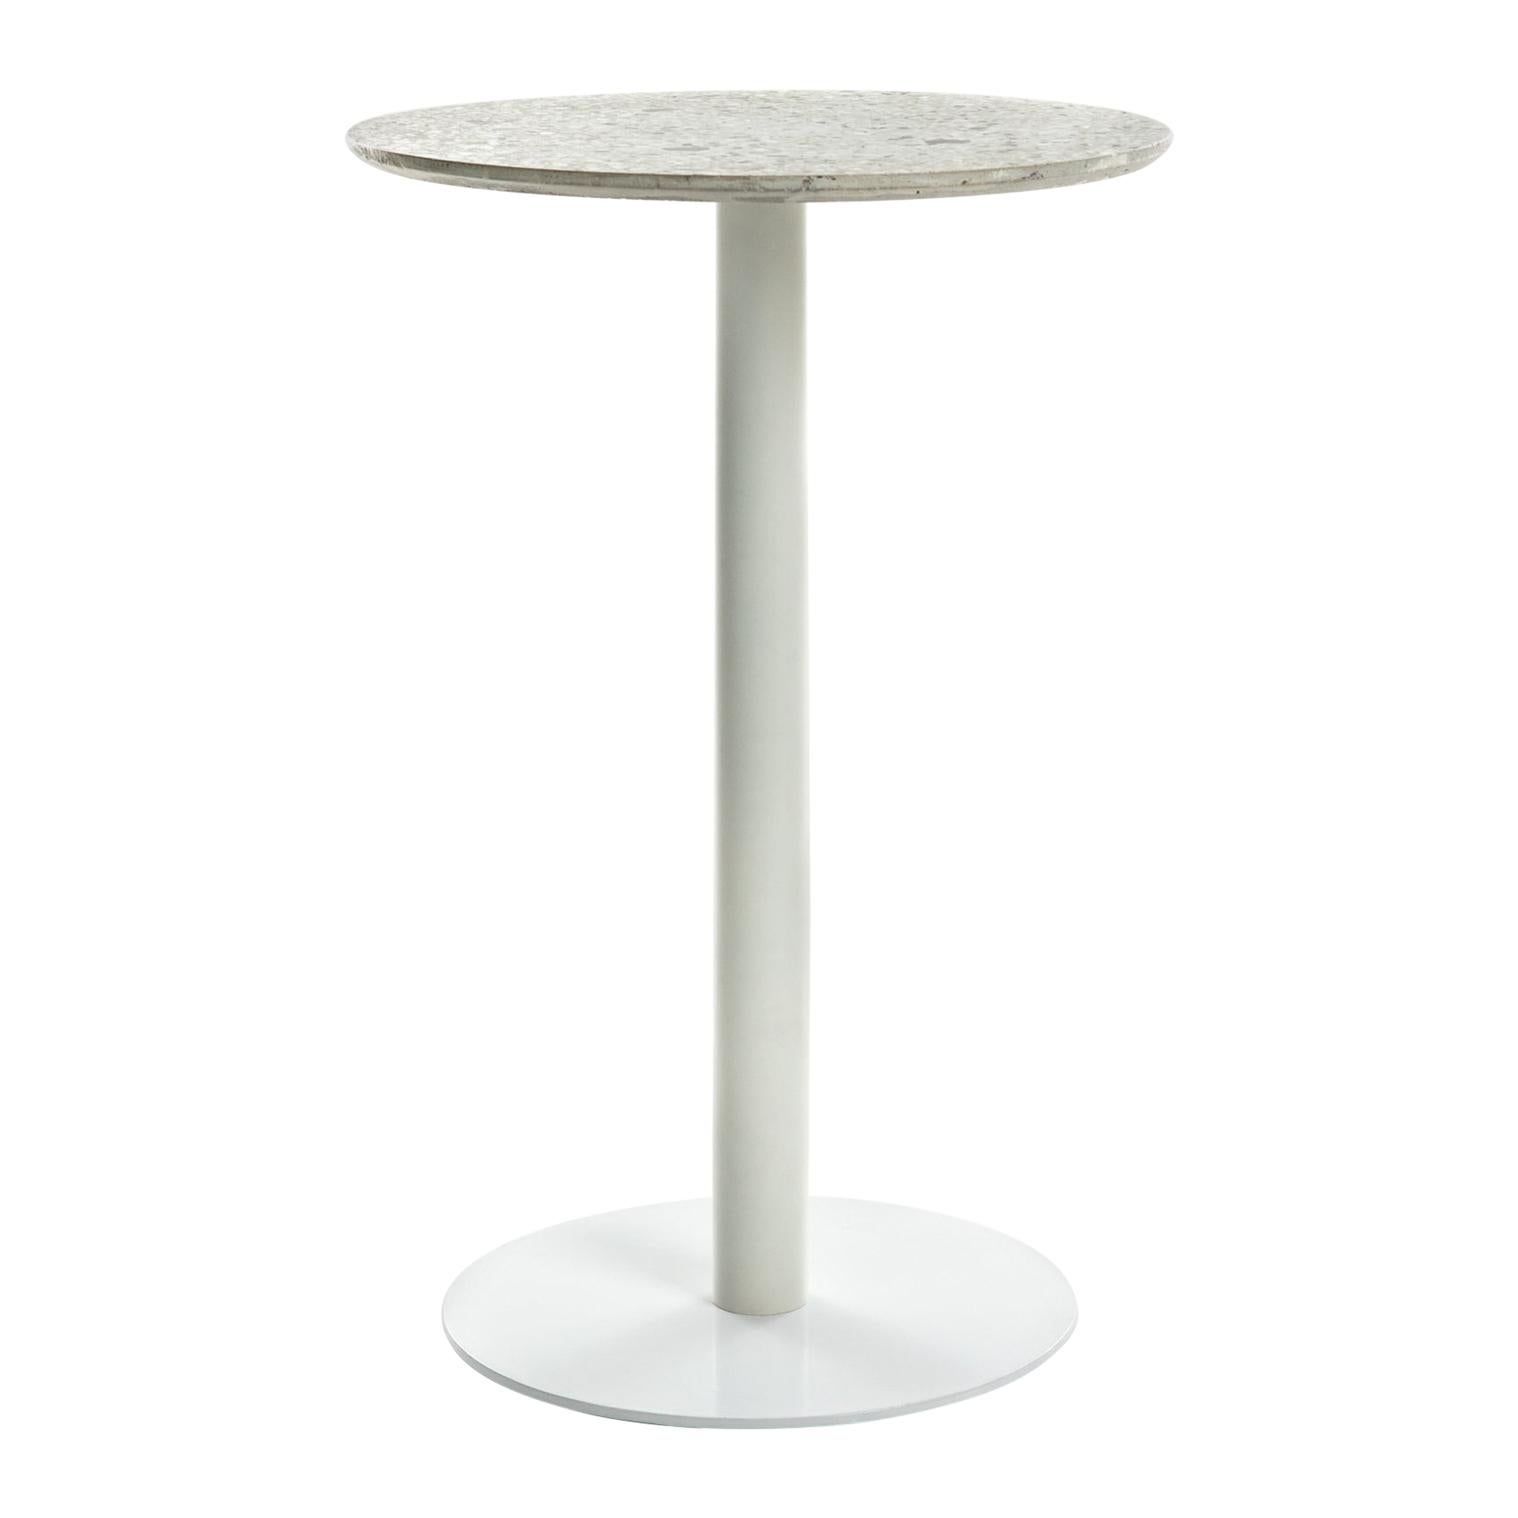 Guéridon / Bistro Table 'I' in White Terrazzo